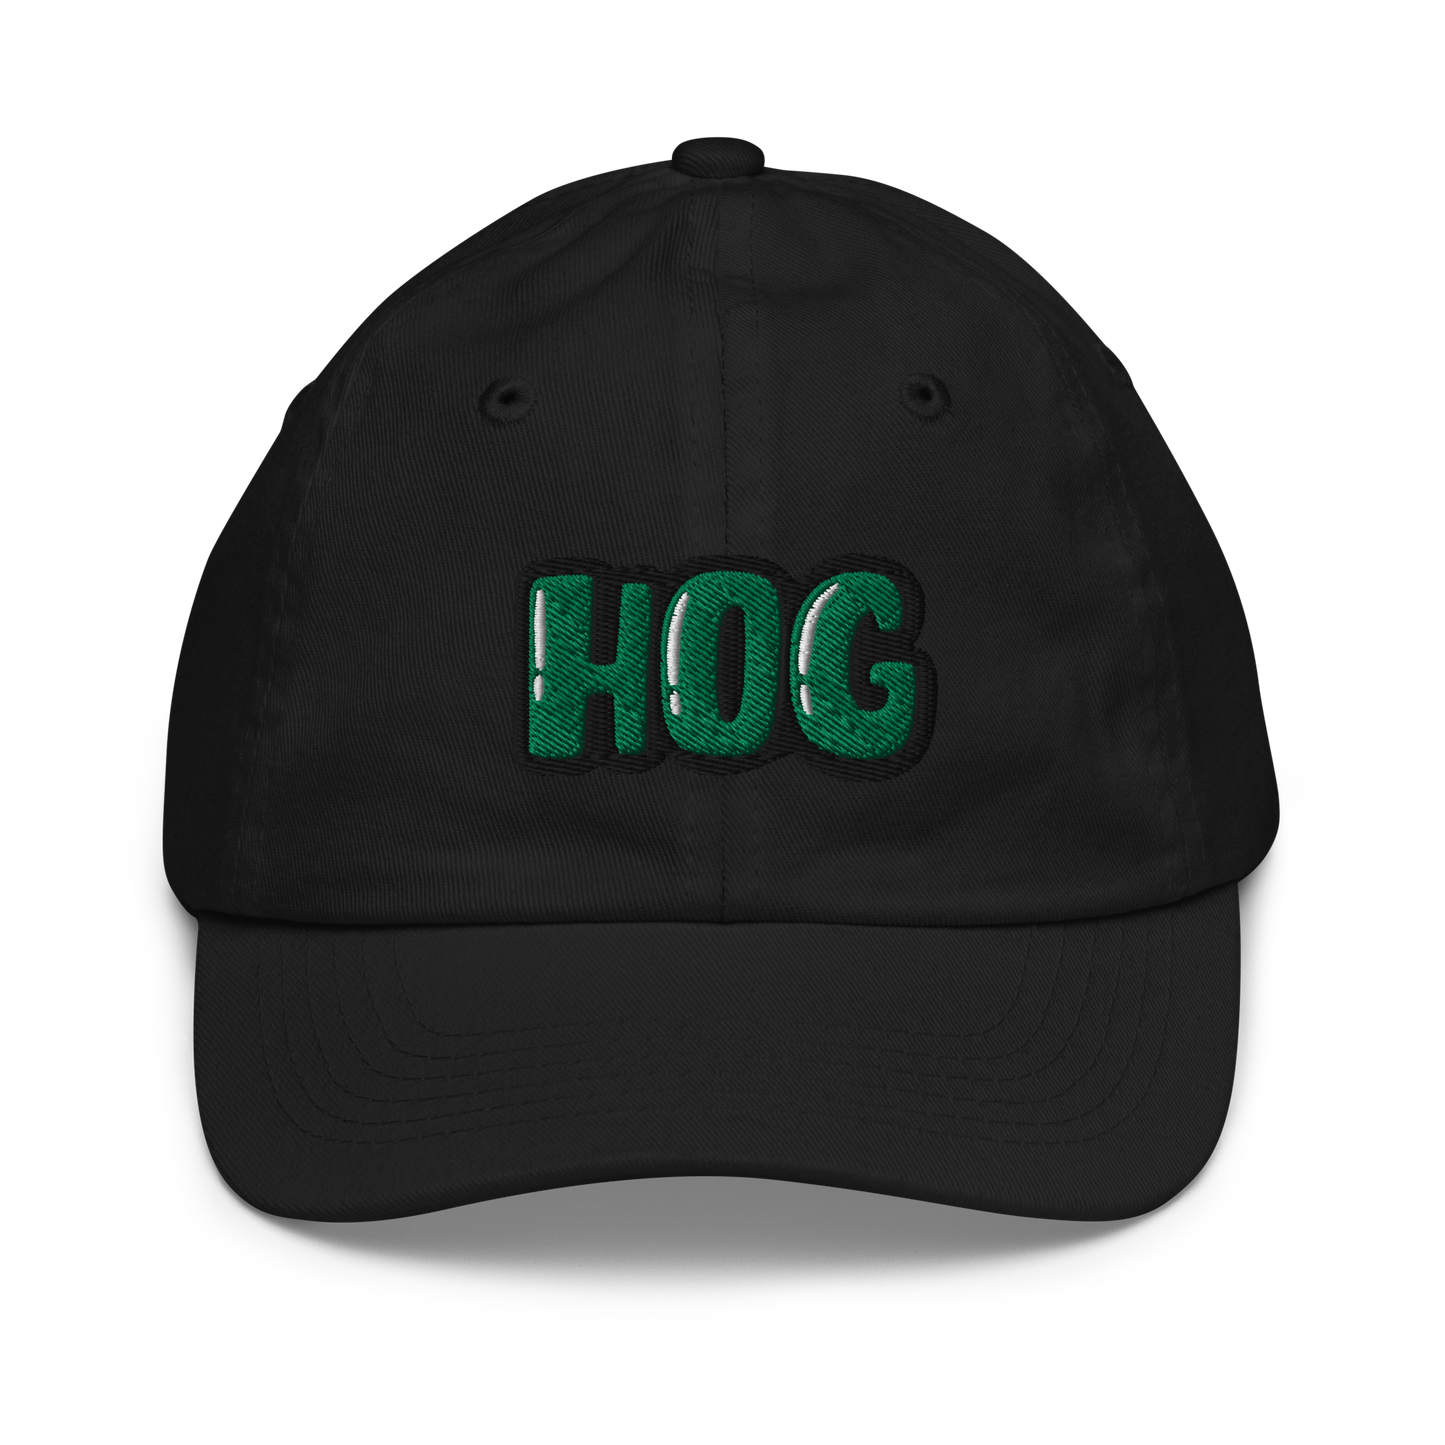 Youth "HOG" Hat